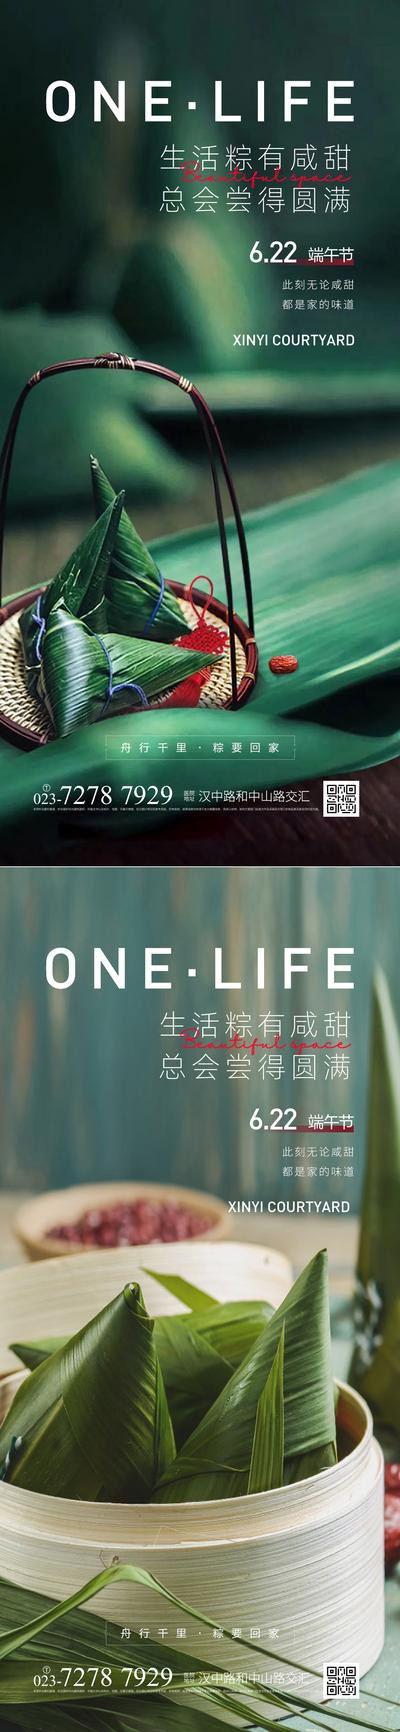 南门网 广告 海报 节日 端午节 粽子 系列